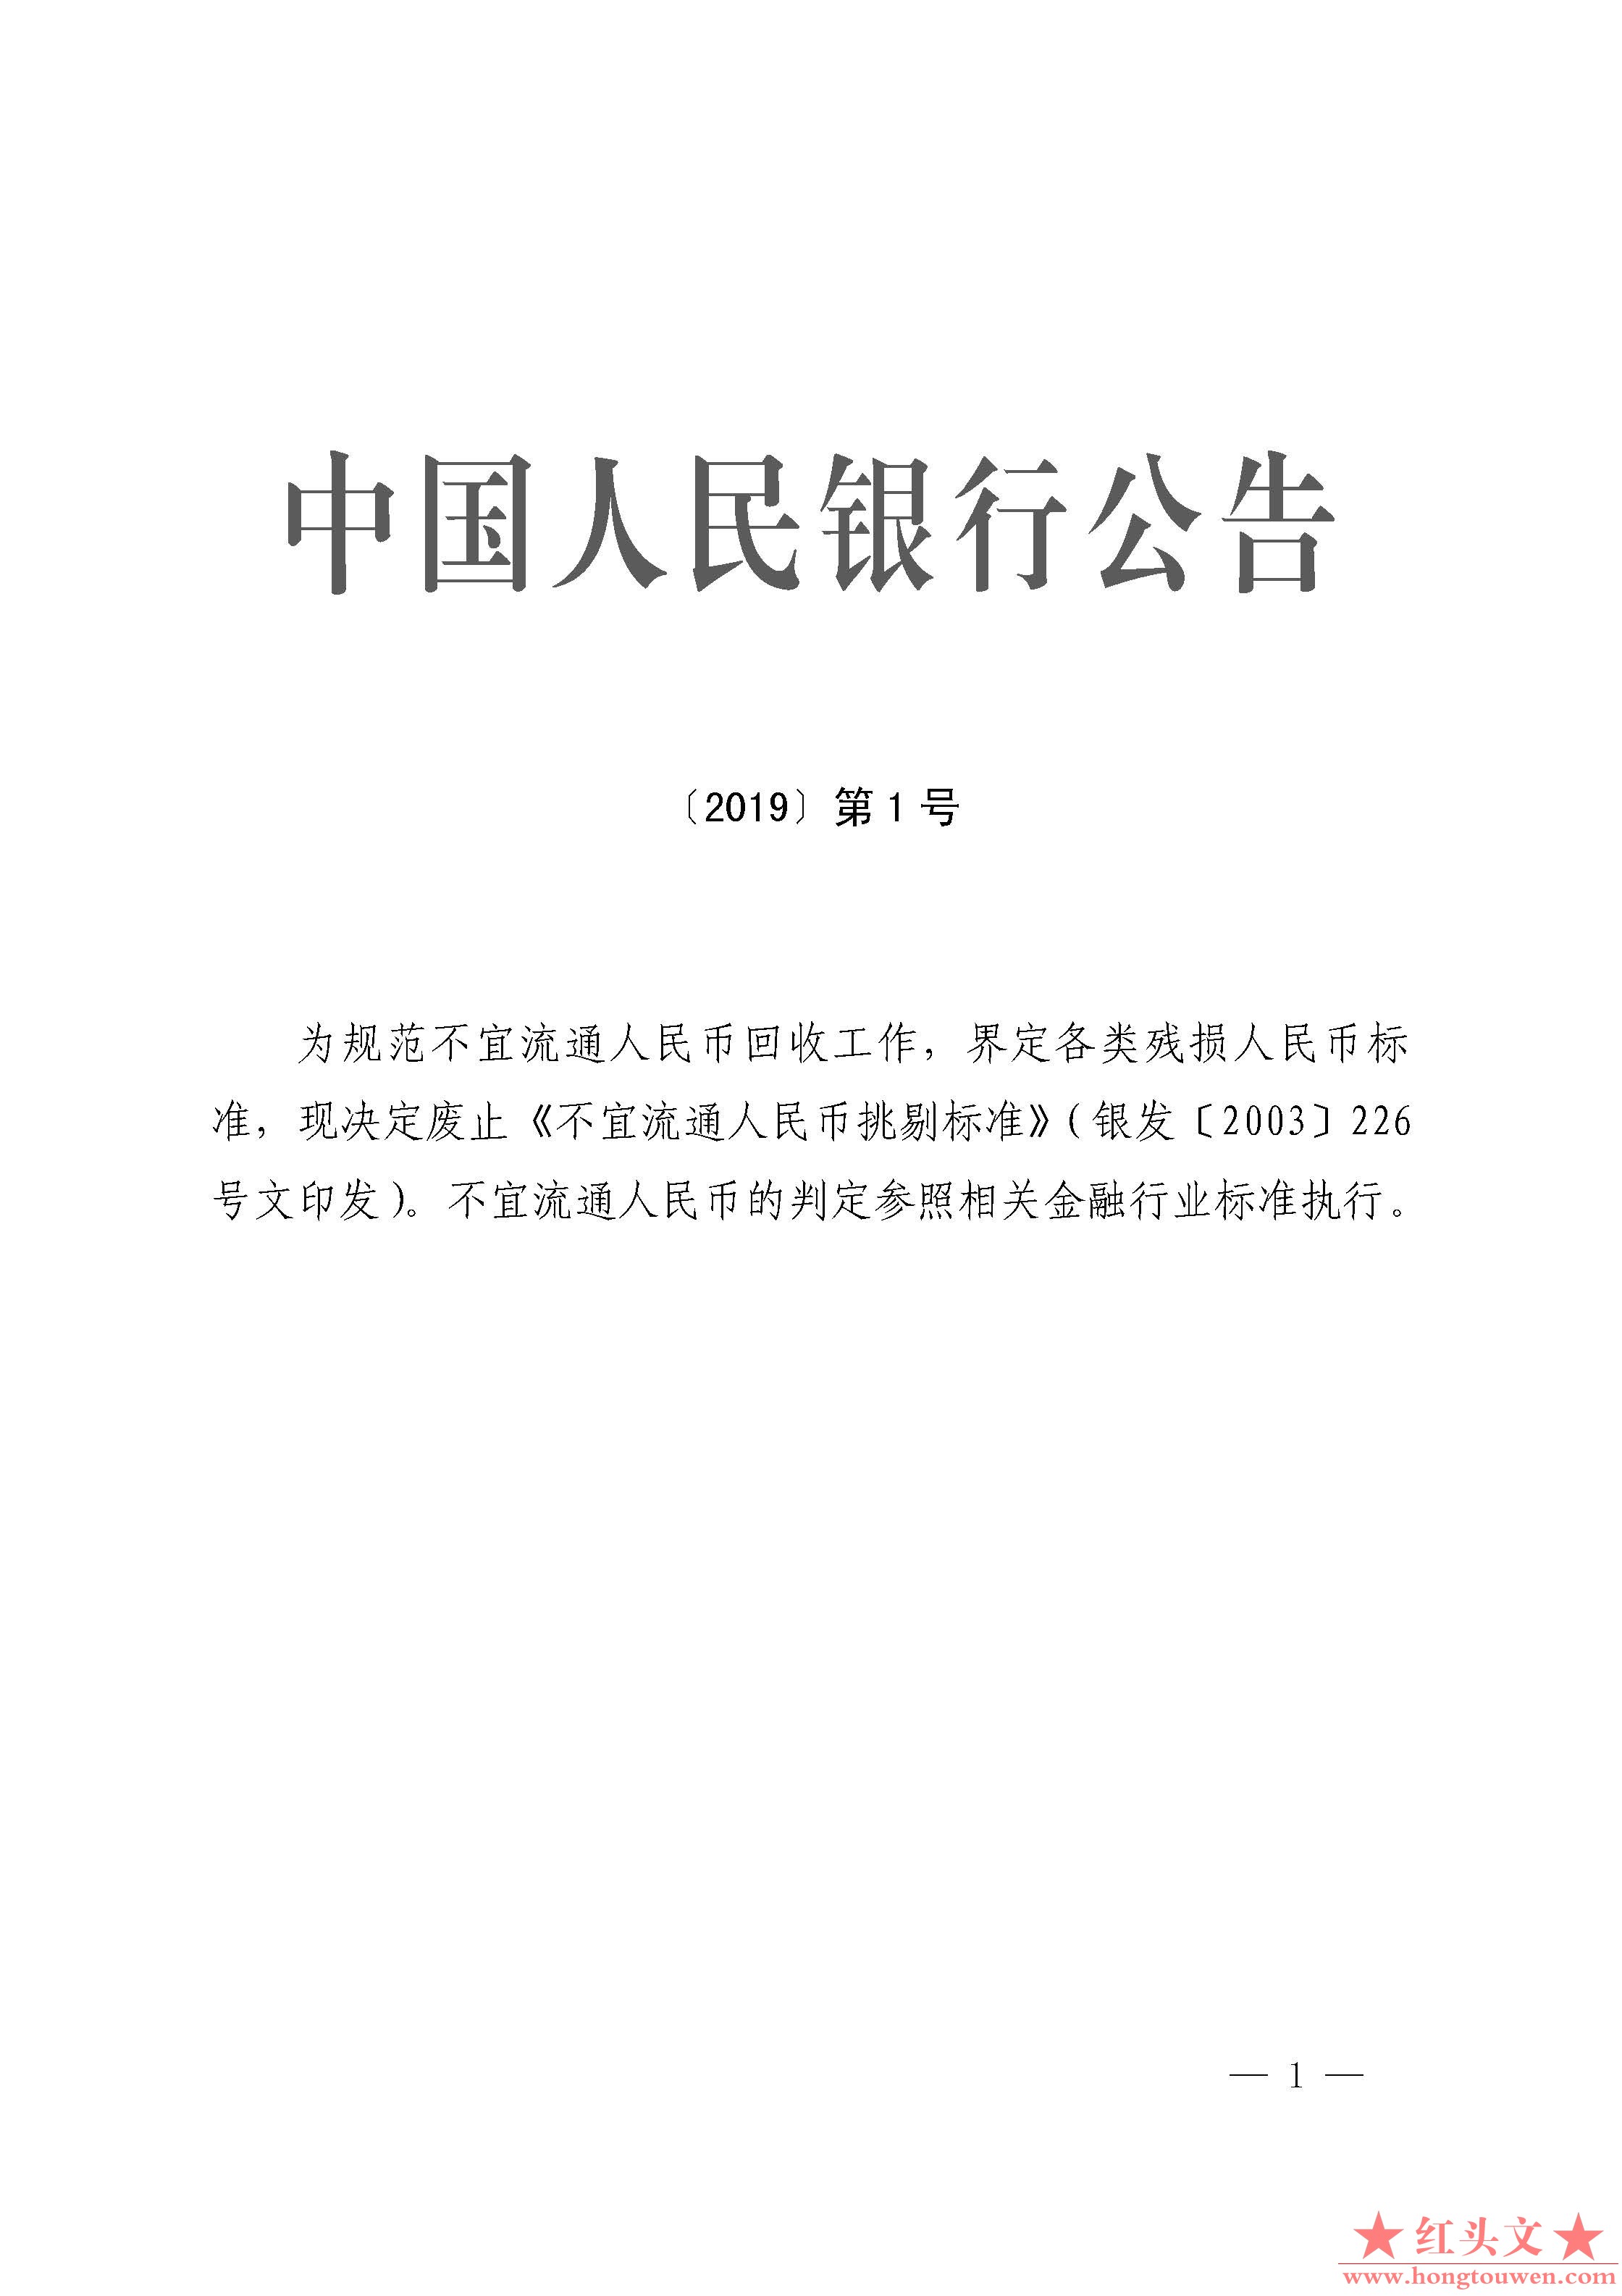 中国人民银行公告[2019]第1号-废止《不宜流通人民币挑剔标准》.jpg